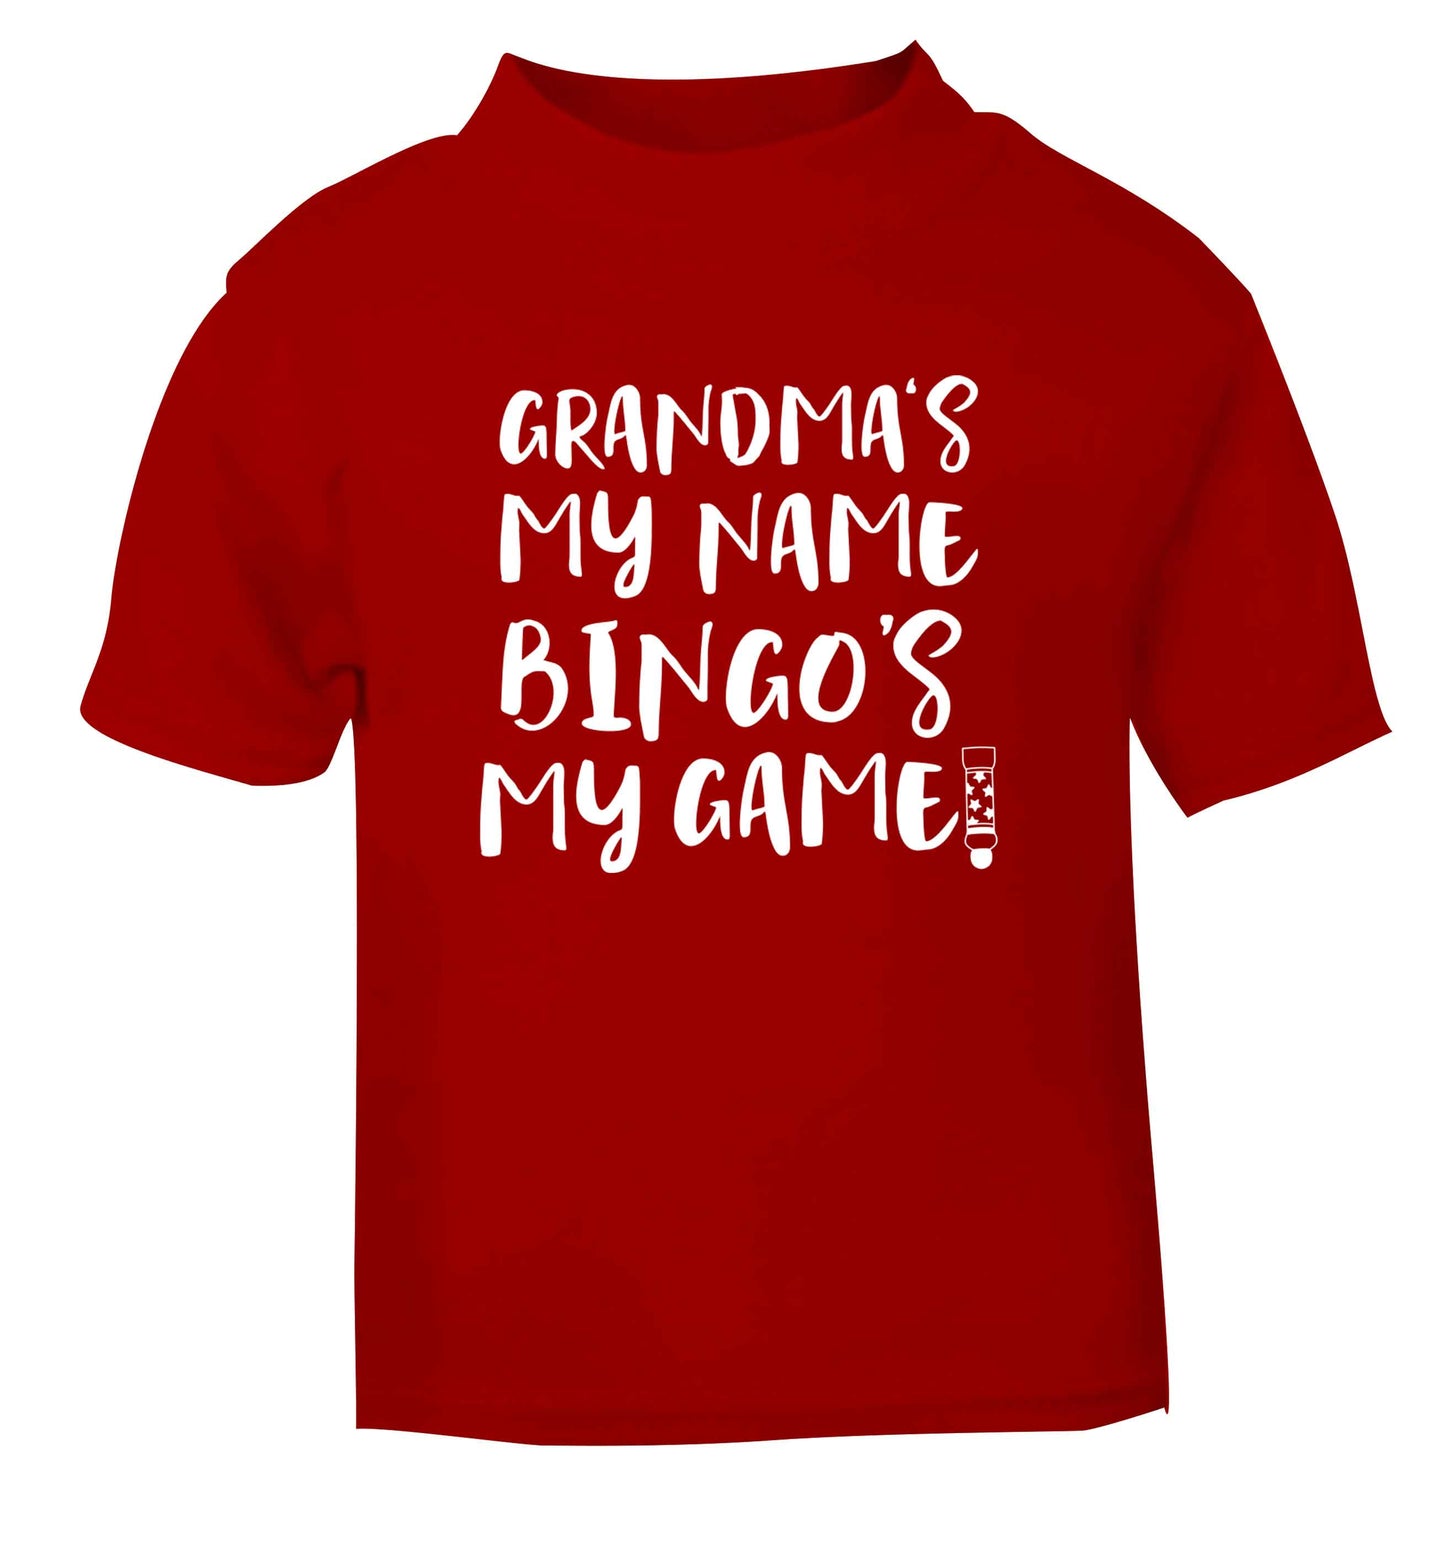 Grandma's my name bingo's my game! red Baby Toddler Tshirt 2 Years